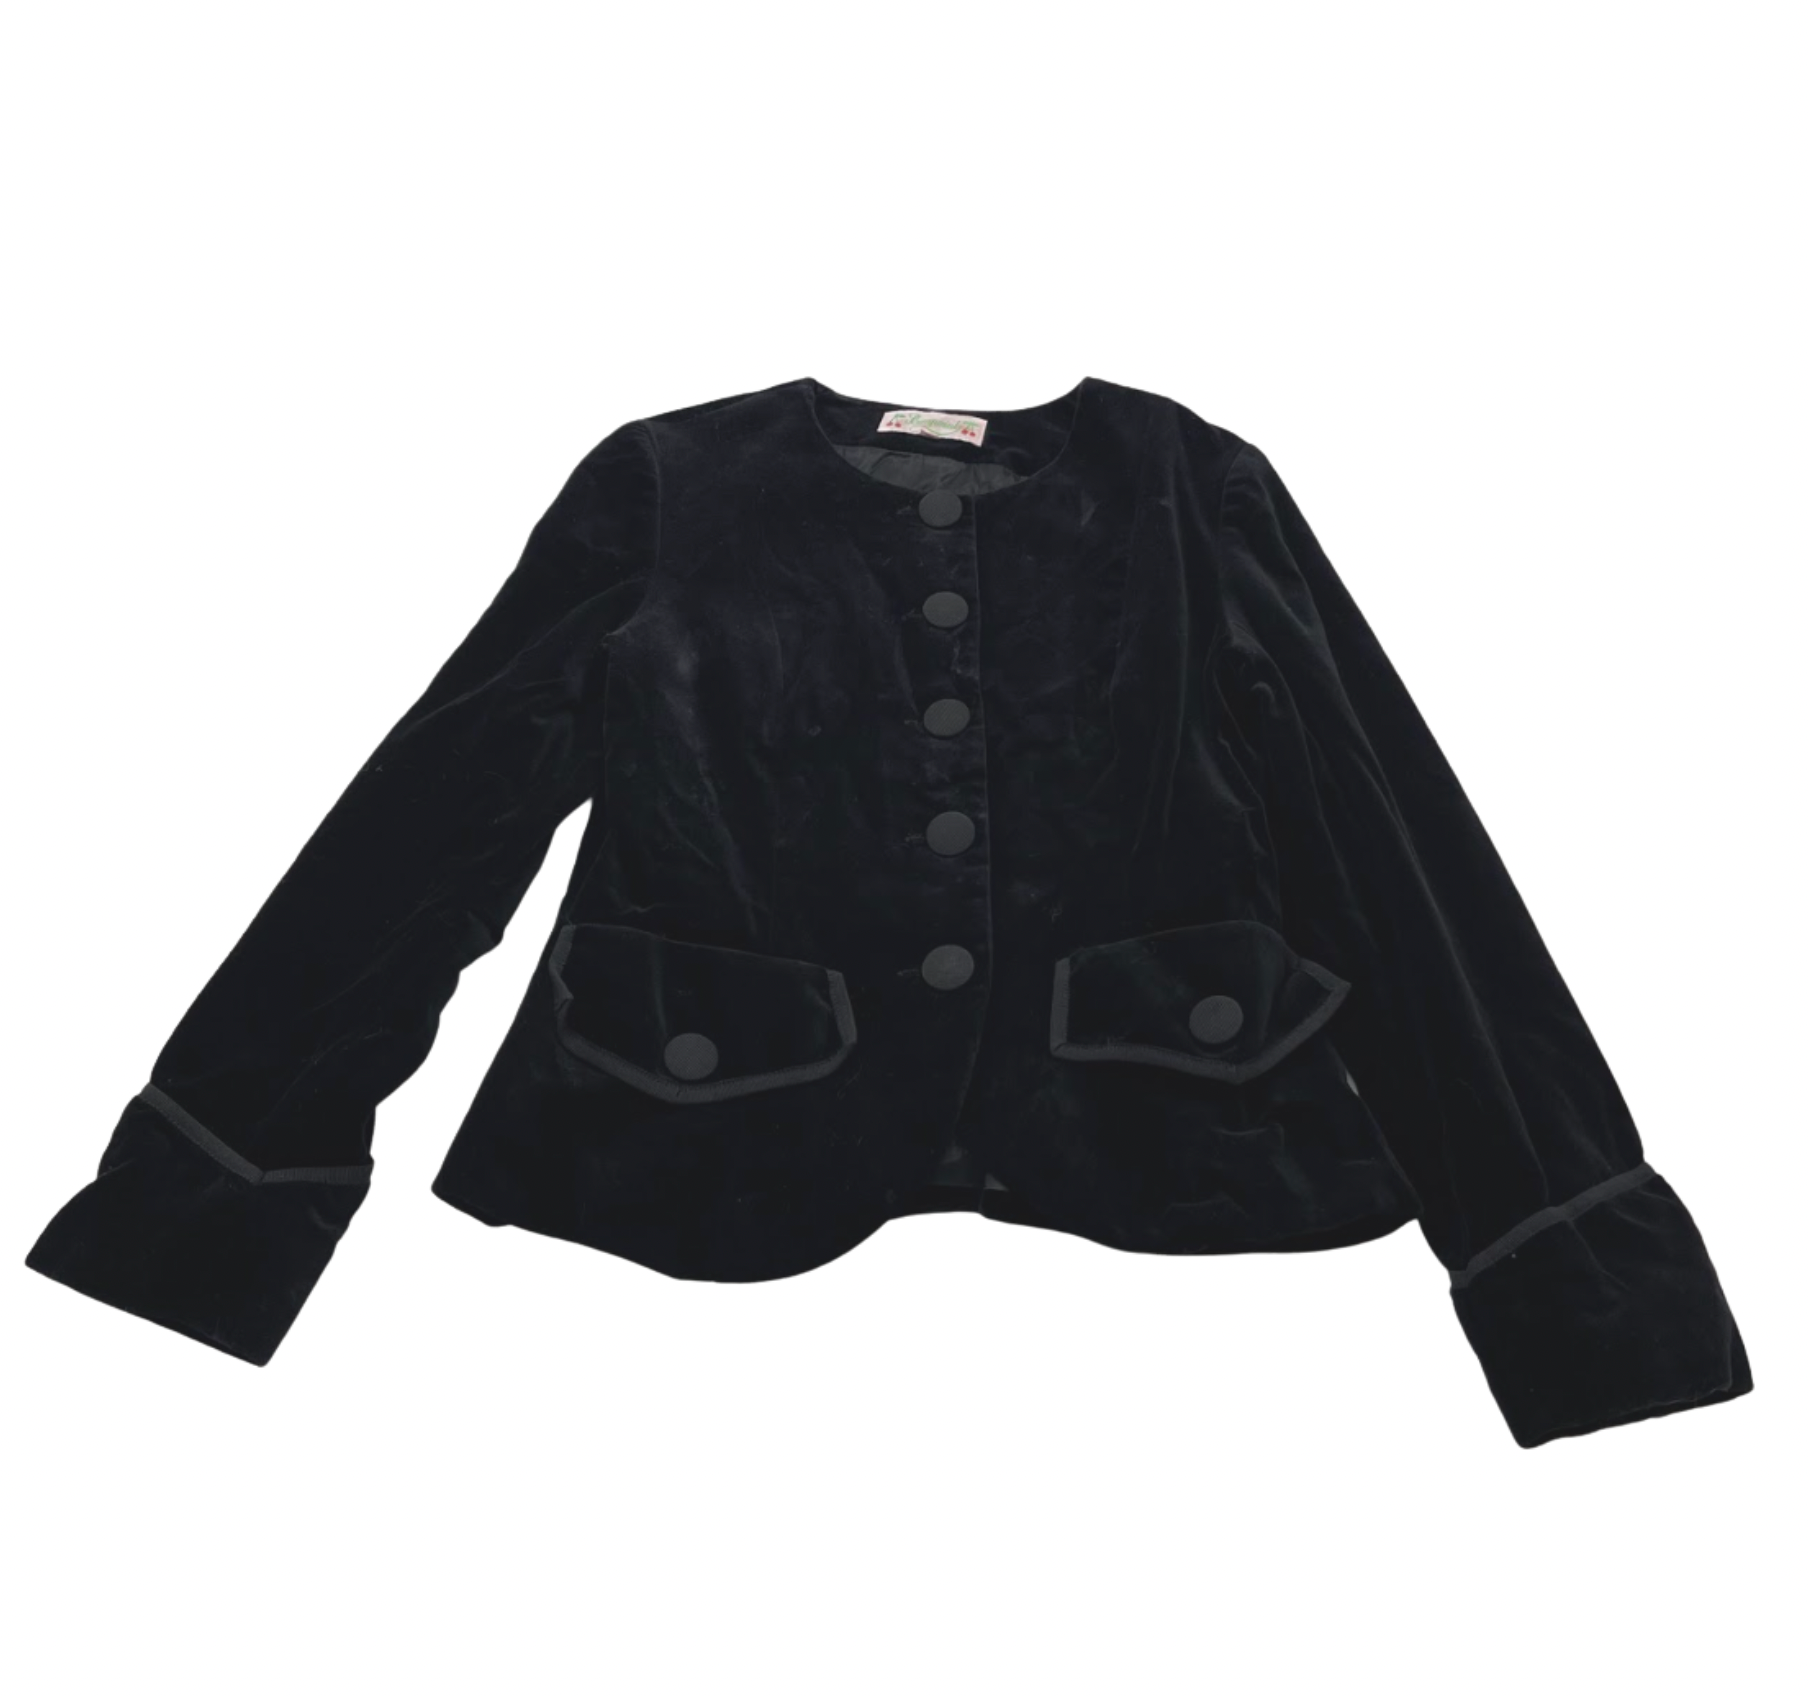 BONPOINT - Black velvet jacket - 12 years old